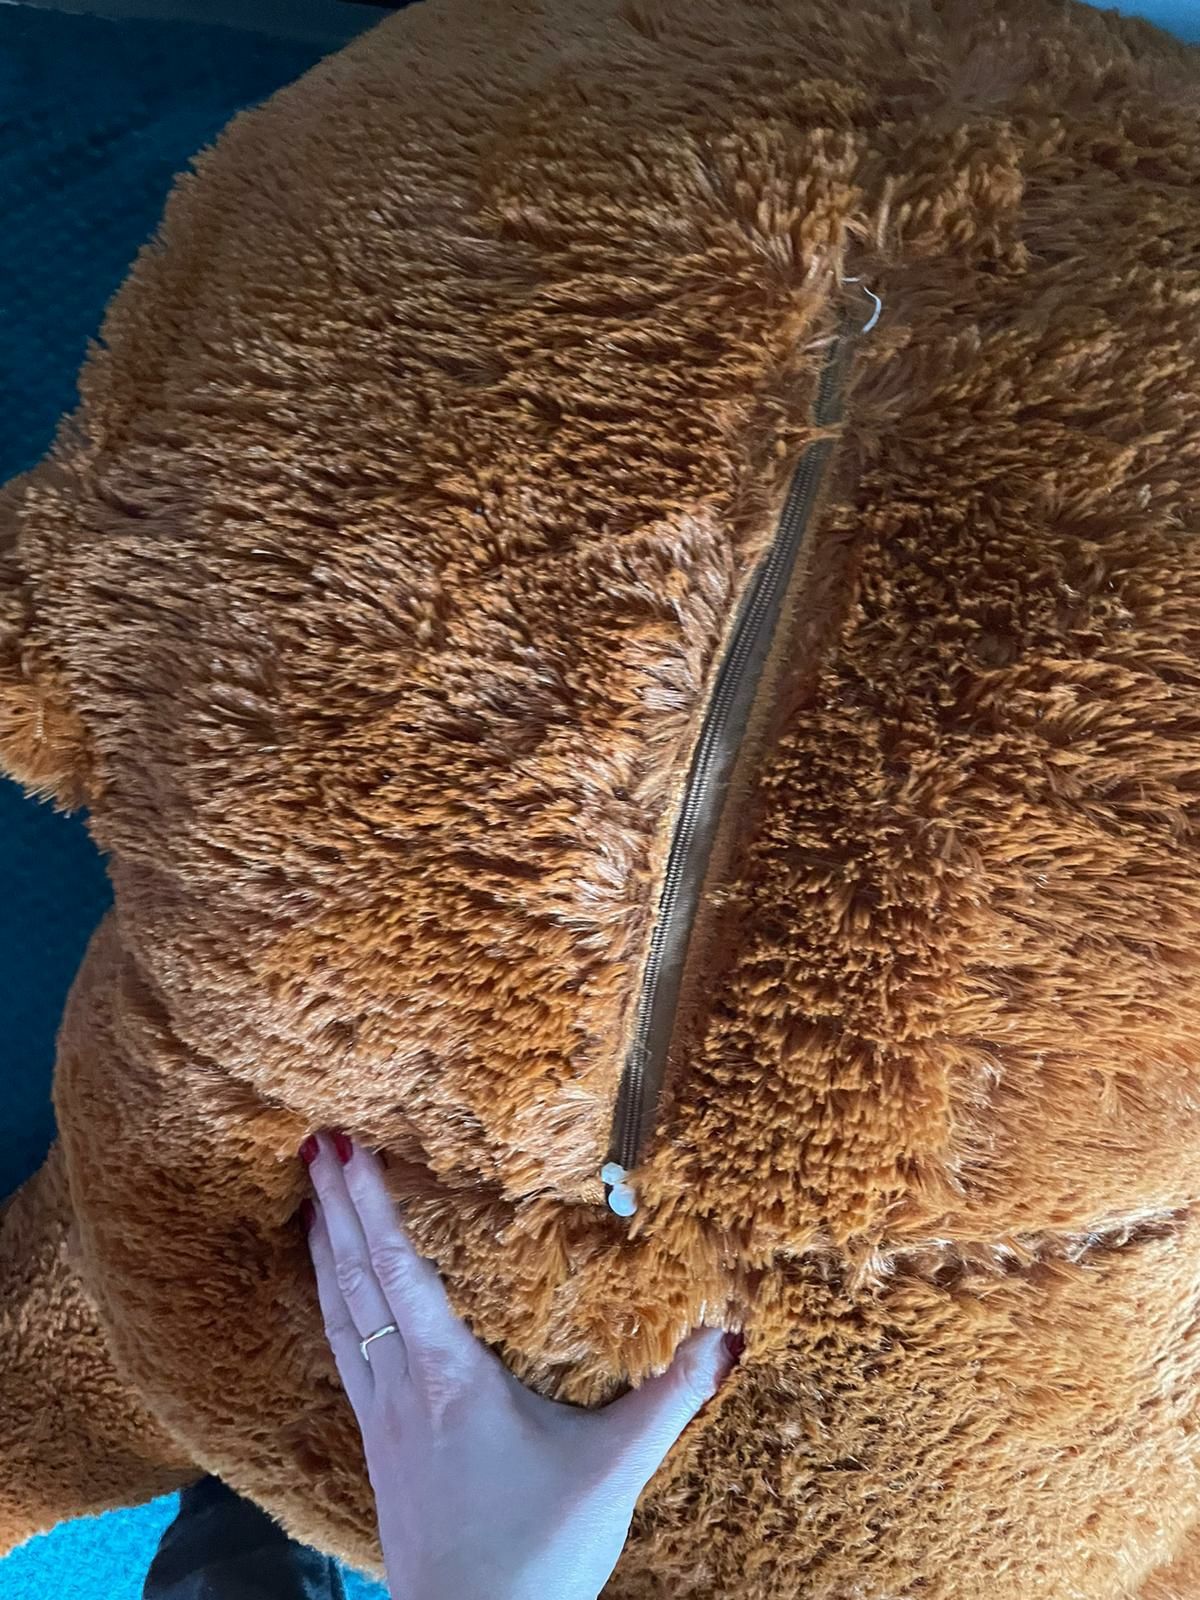 Pluszowy miś 180 cm duży ogromy niedźwiedź brązowy z kokardą